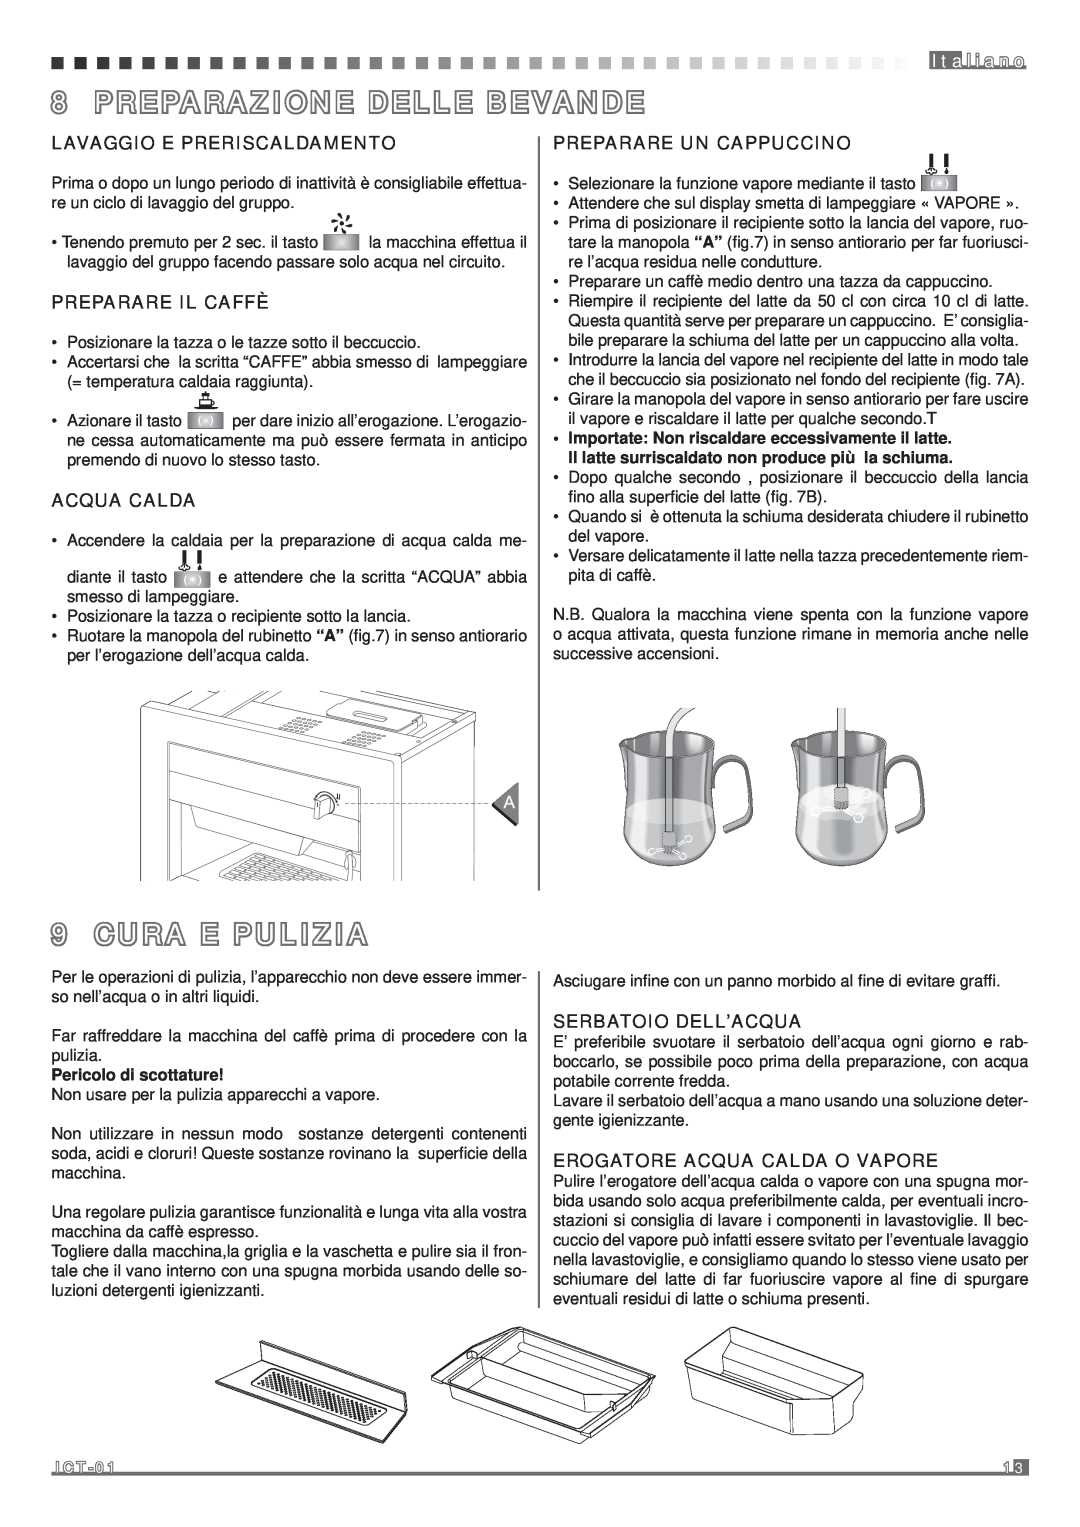 Fagor America MQC-A10 US manual I t a l i a n o, Lavaggio E Preriscaldamento, Preparare Il Caffè, Acqua Calda 